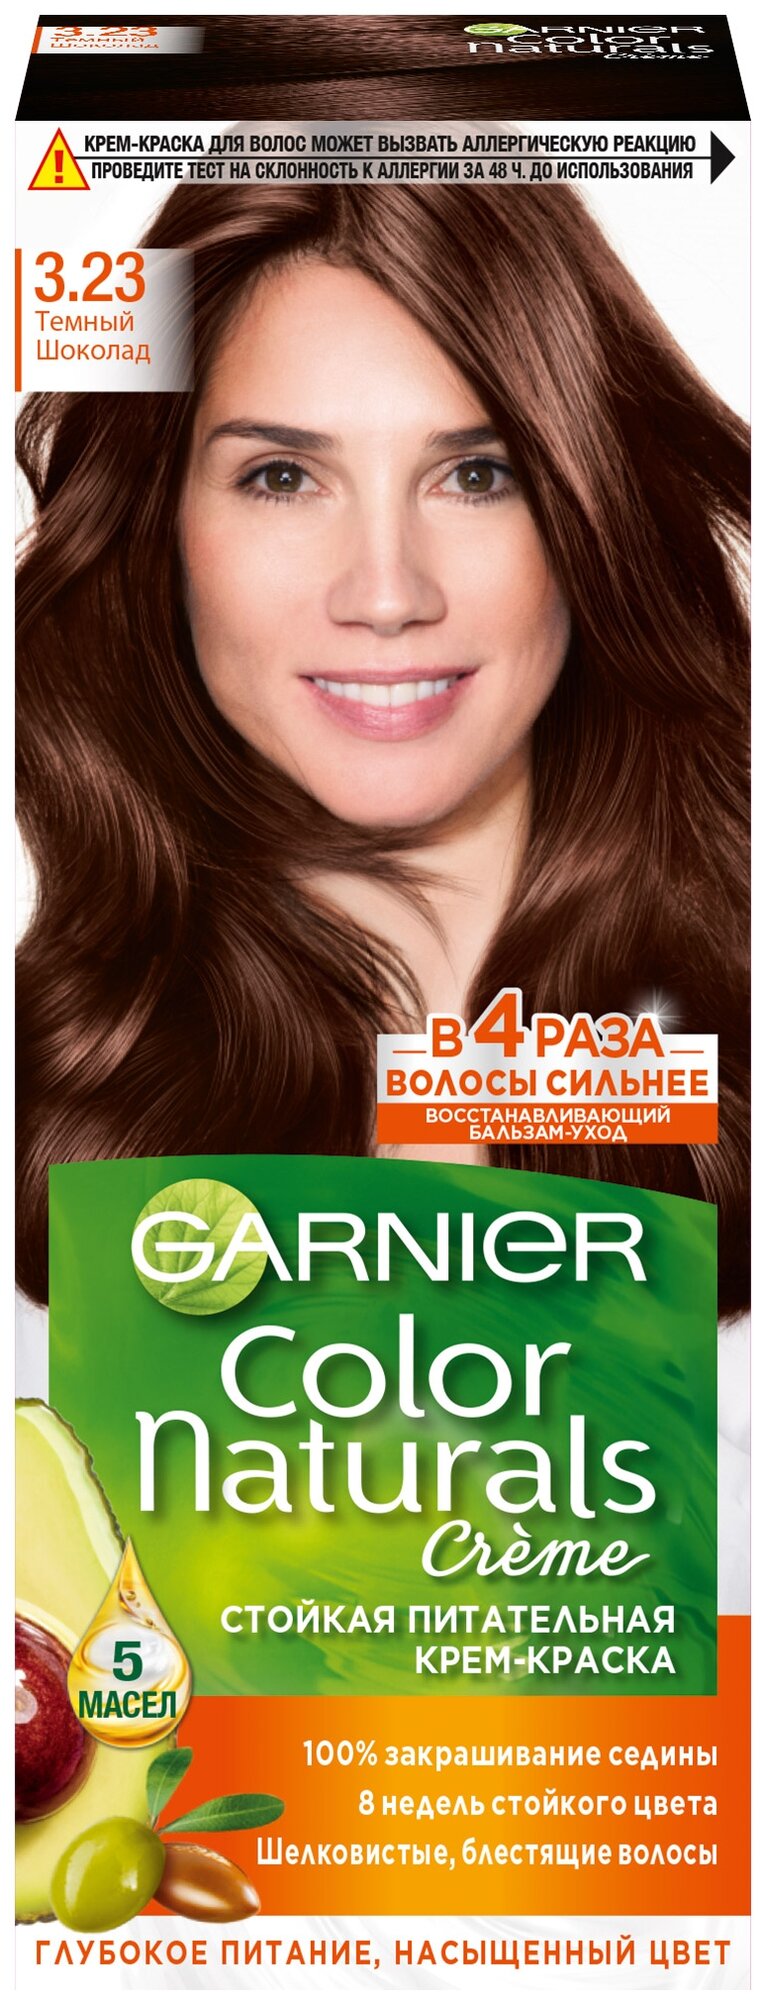 Гарнье / Garnier - Крем-краска для волос 3.23 Темный Шоколад 112 мл